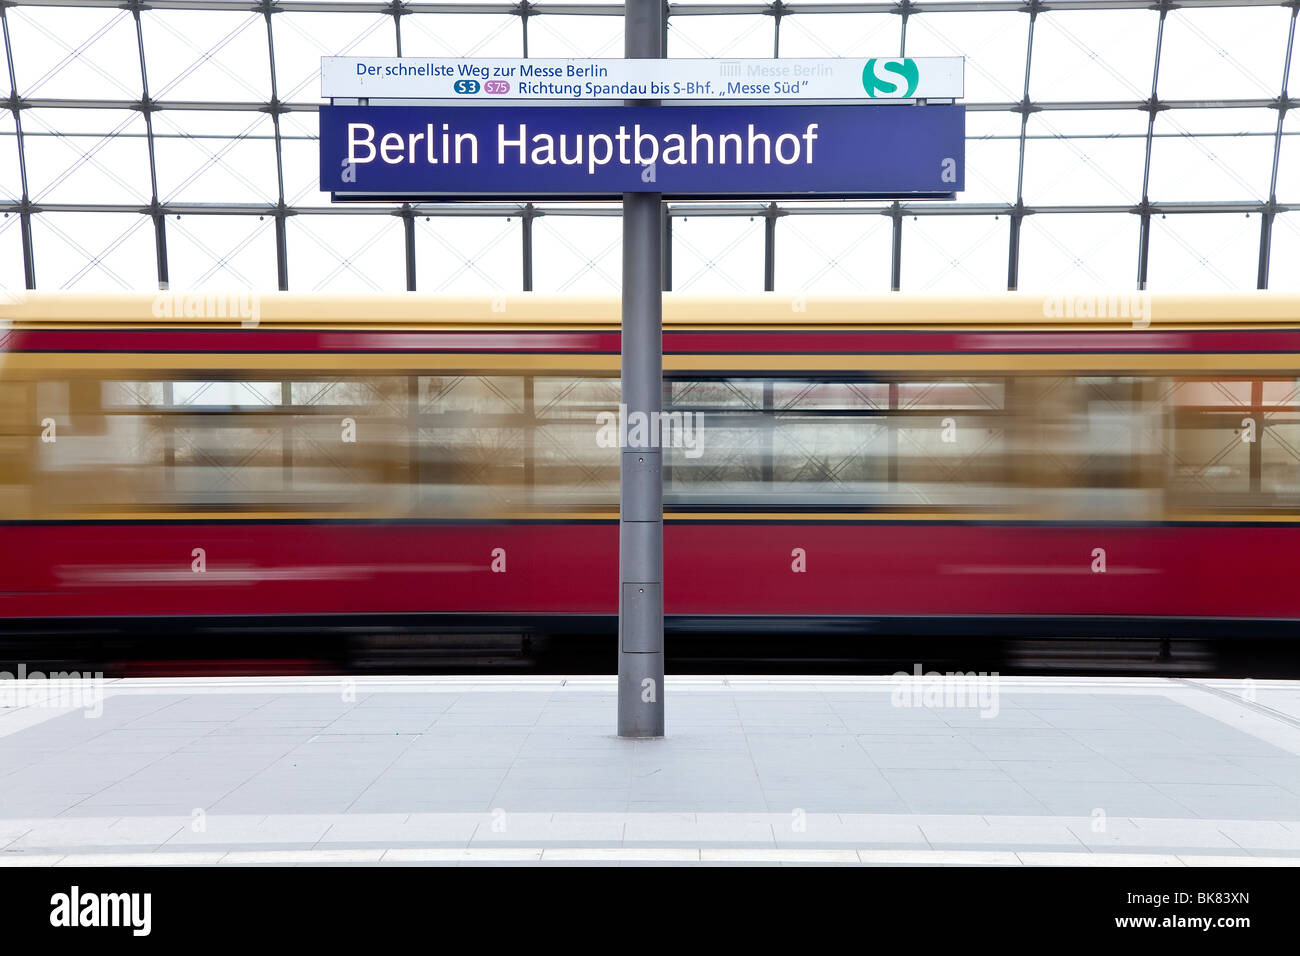 L'Europa, Germania, Berlino, nuova moderna stazione ferroviaria principale - treno tirando nella piattaforma Foto Stock